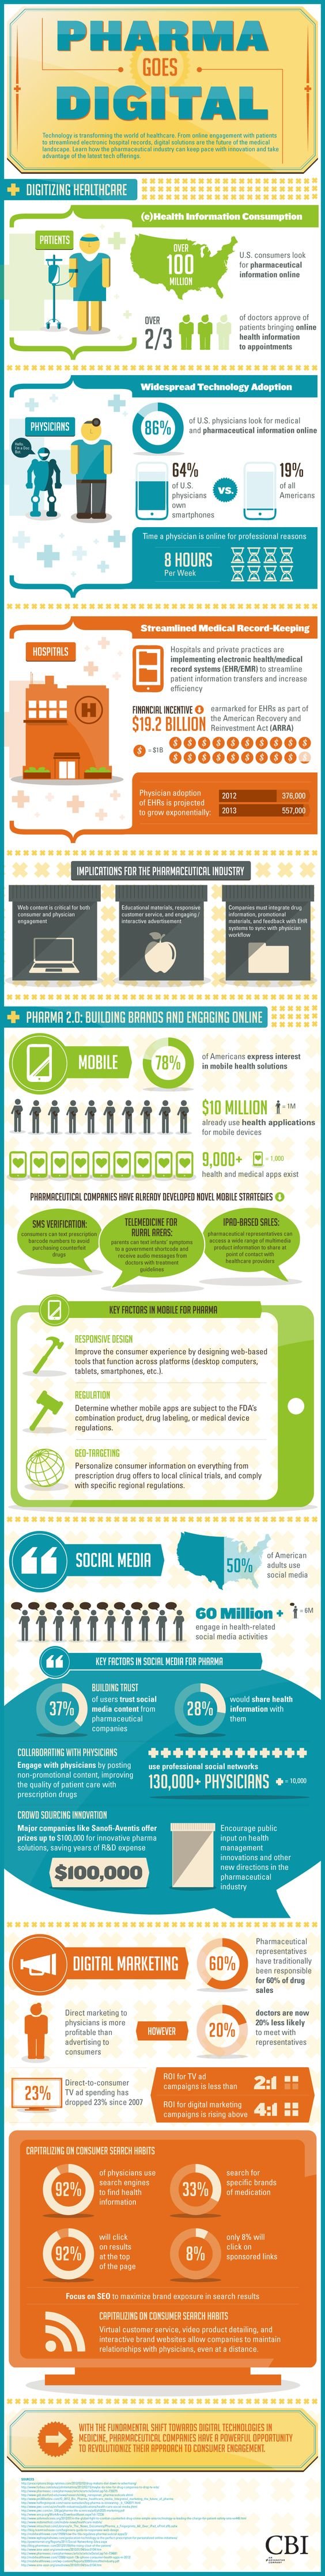 online pharmacy infographic